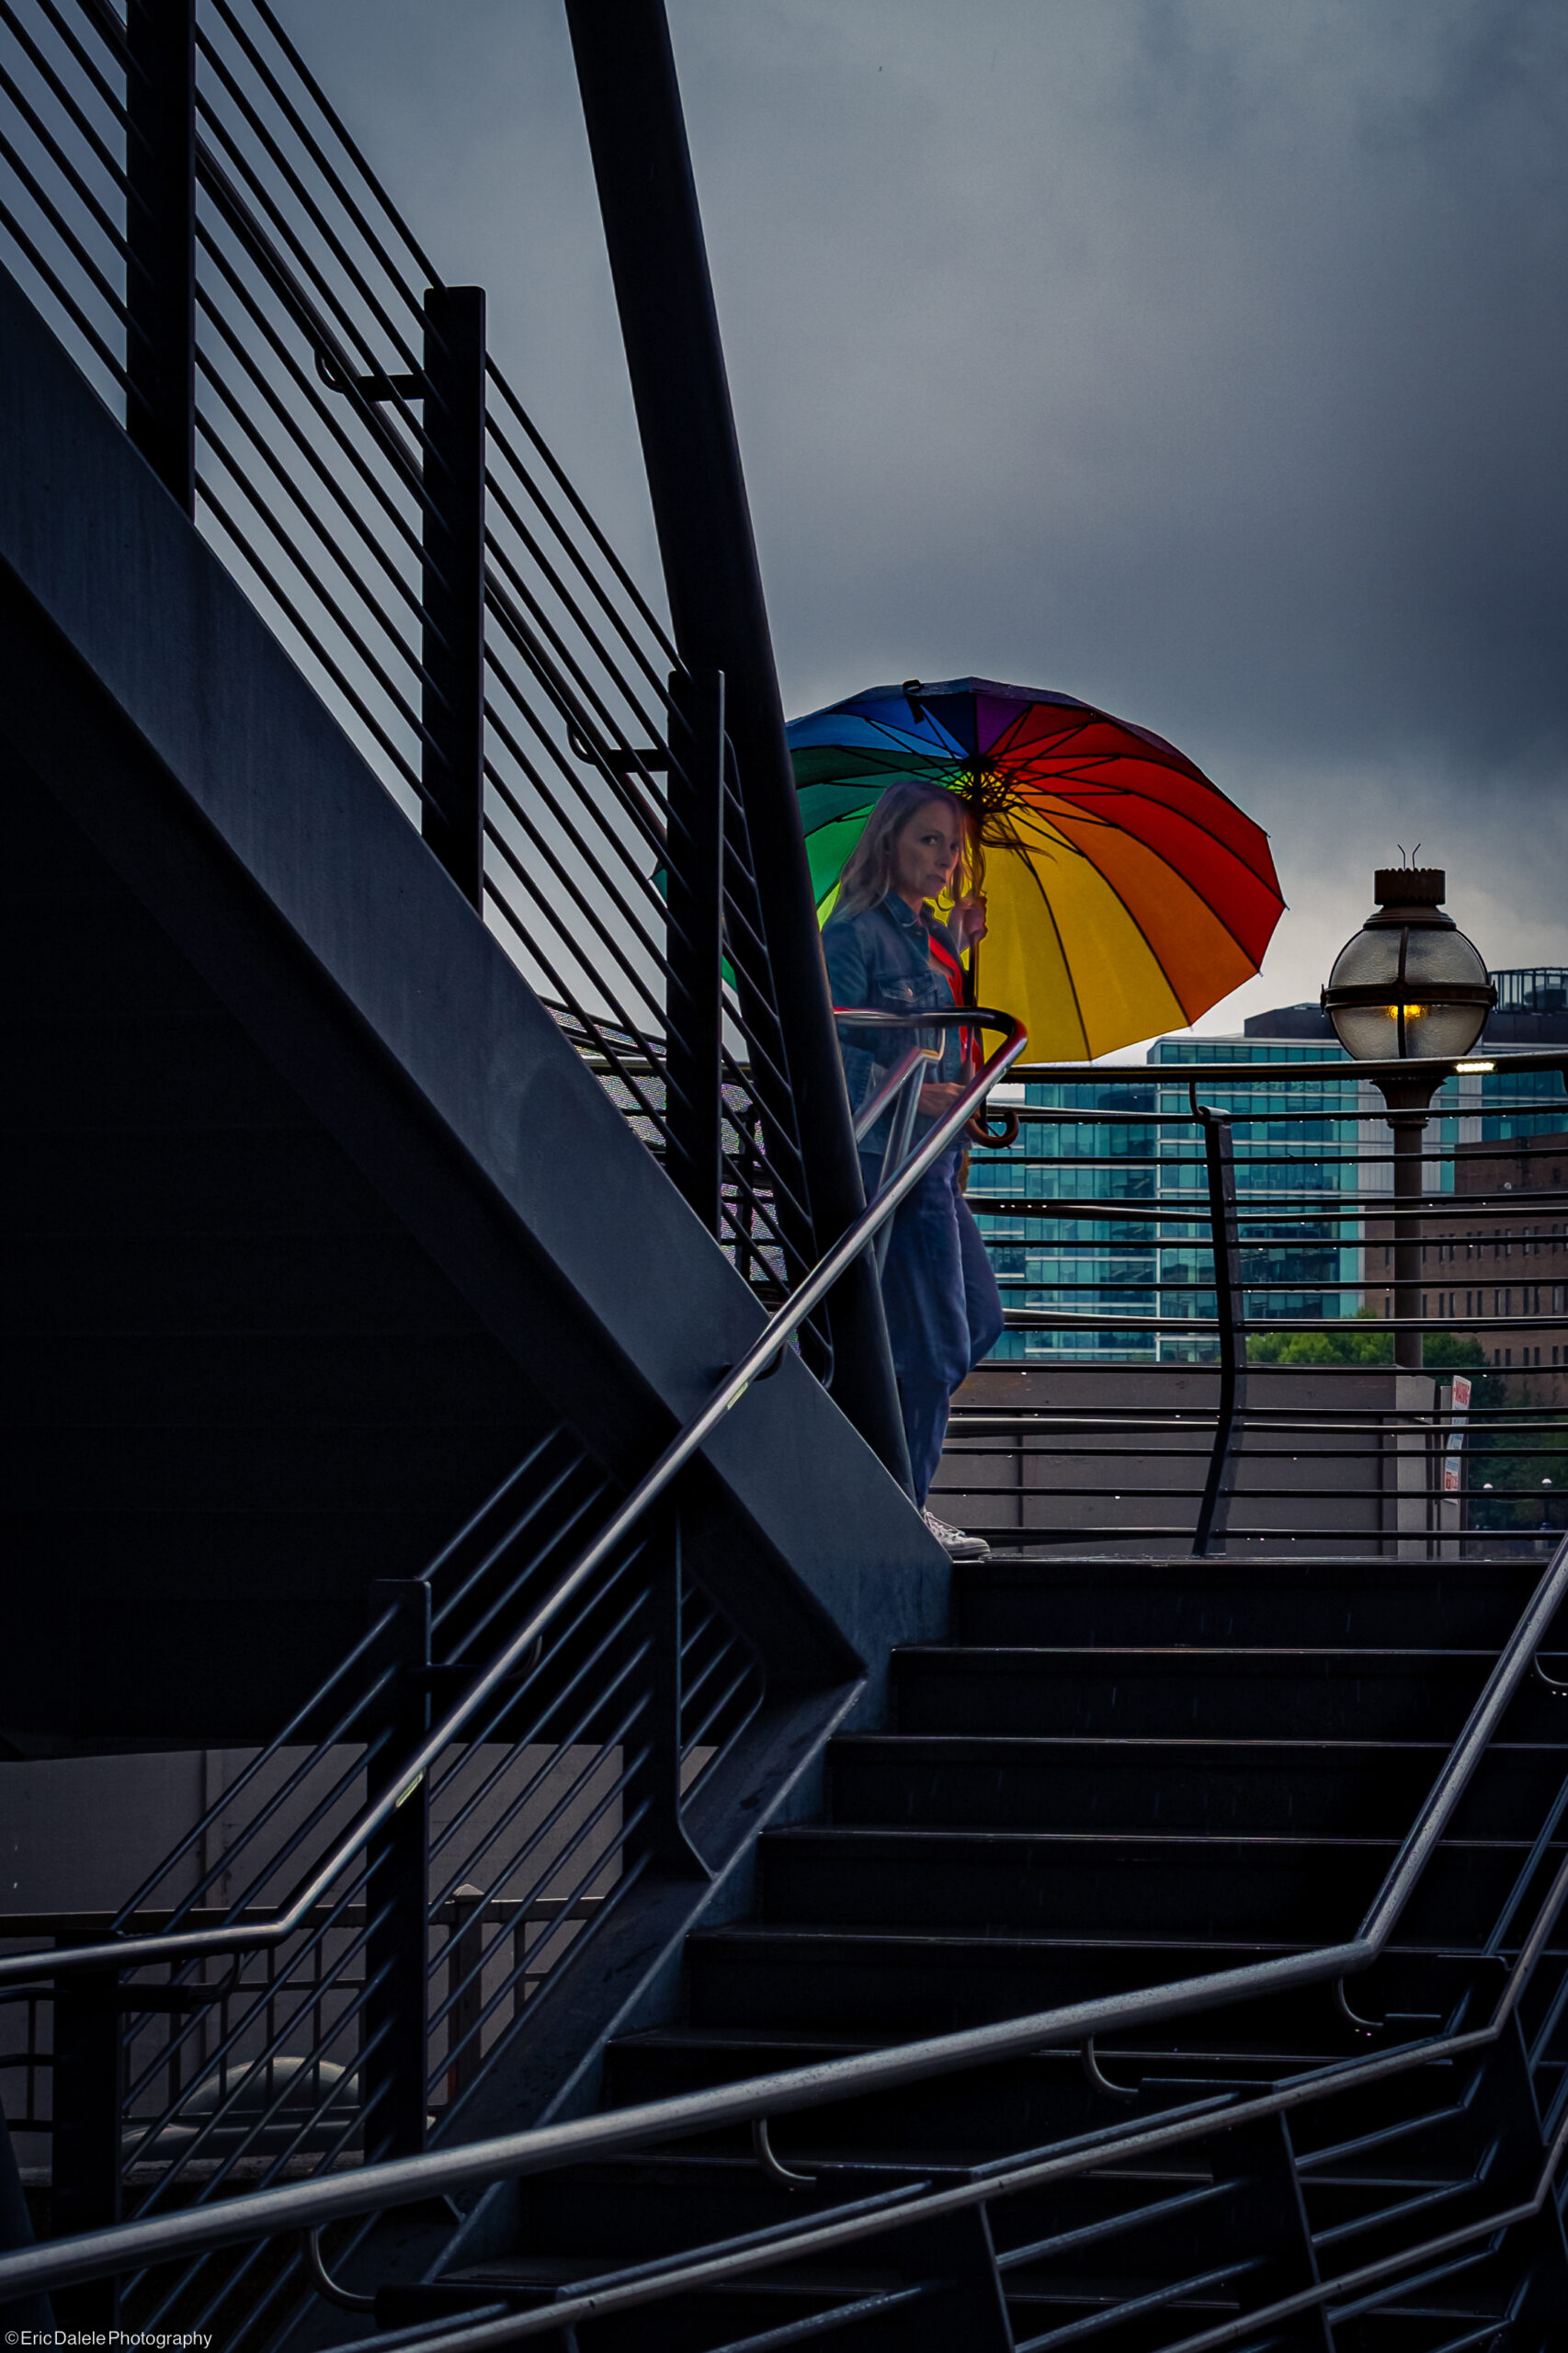 Photographie de rue : la dame avec son parapluie